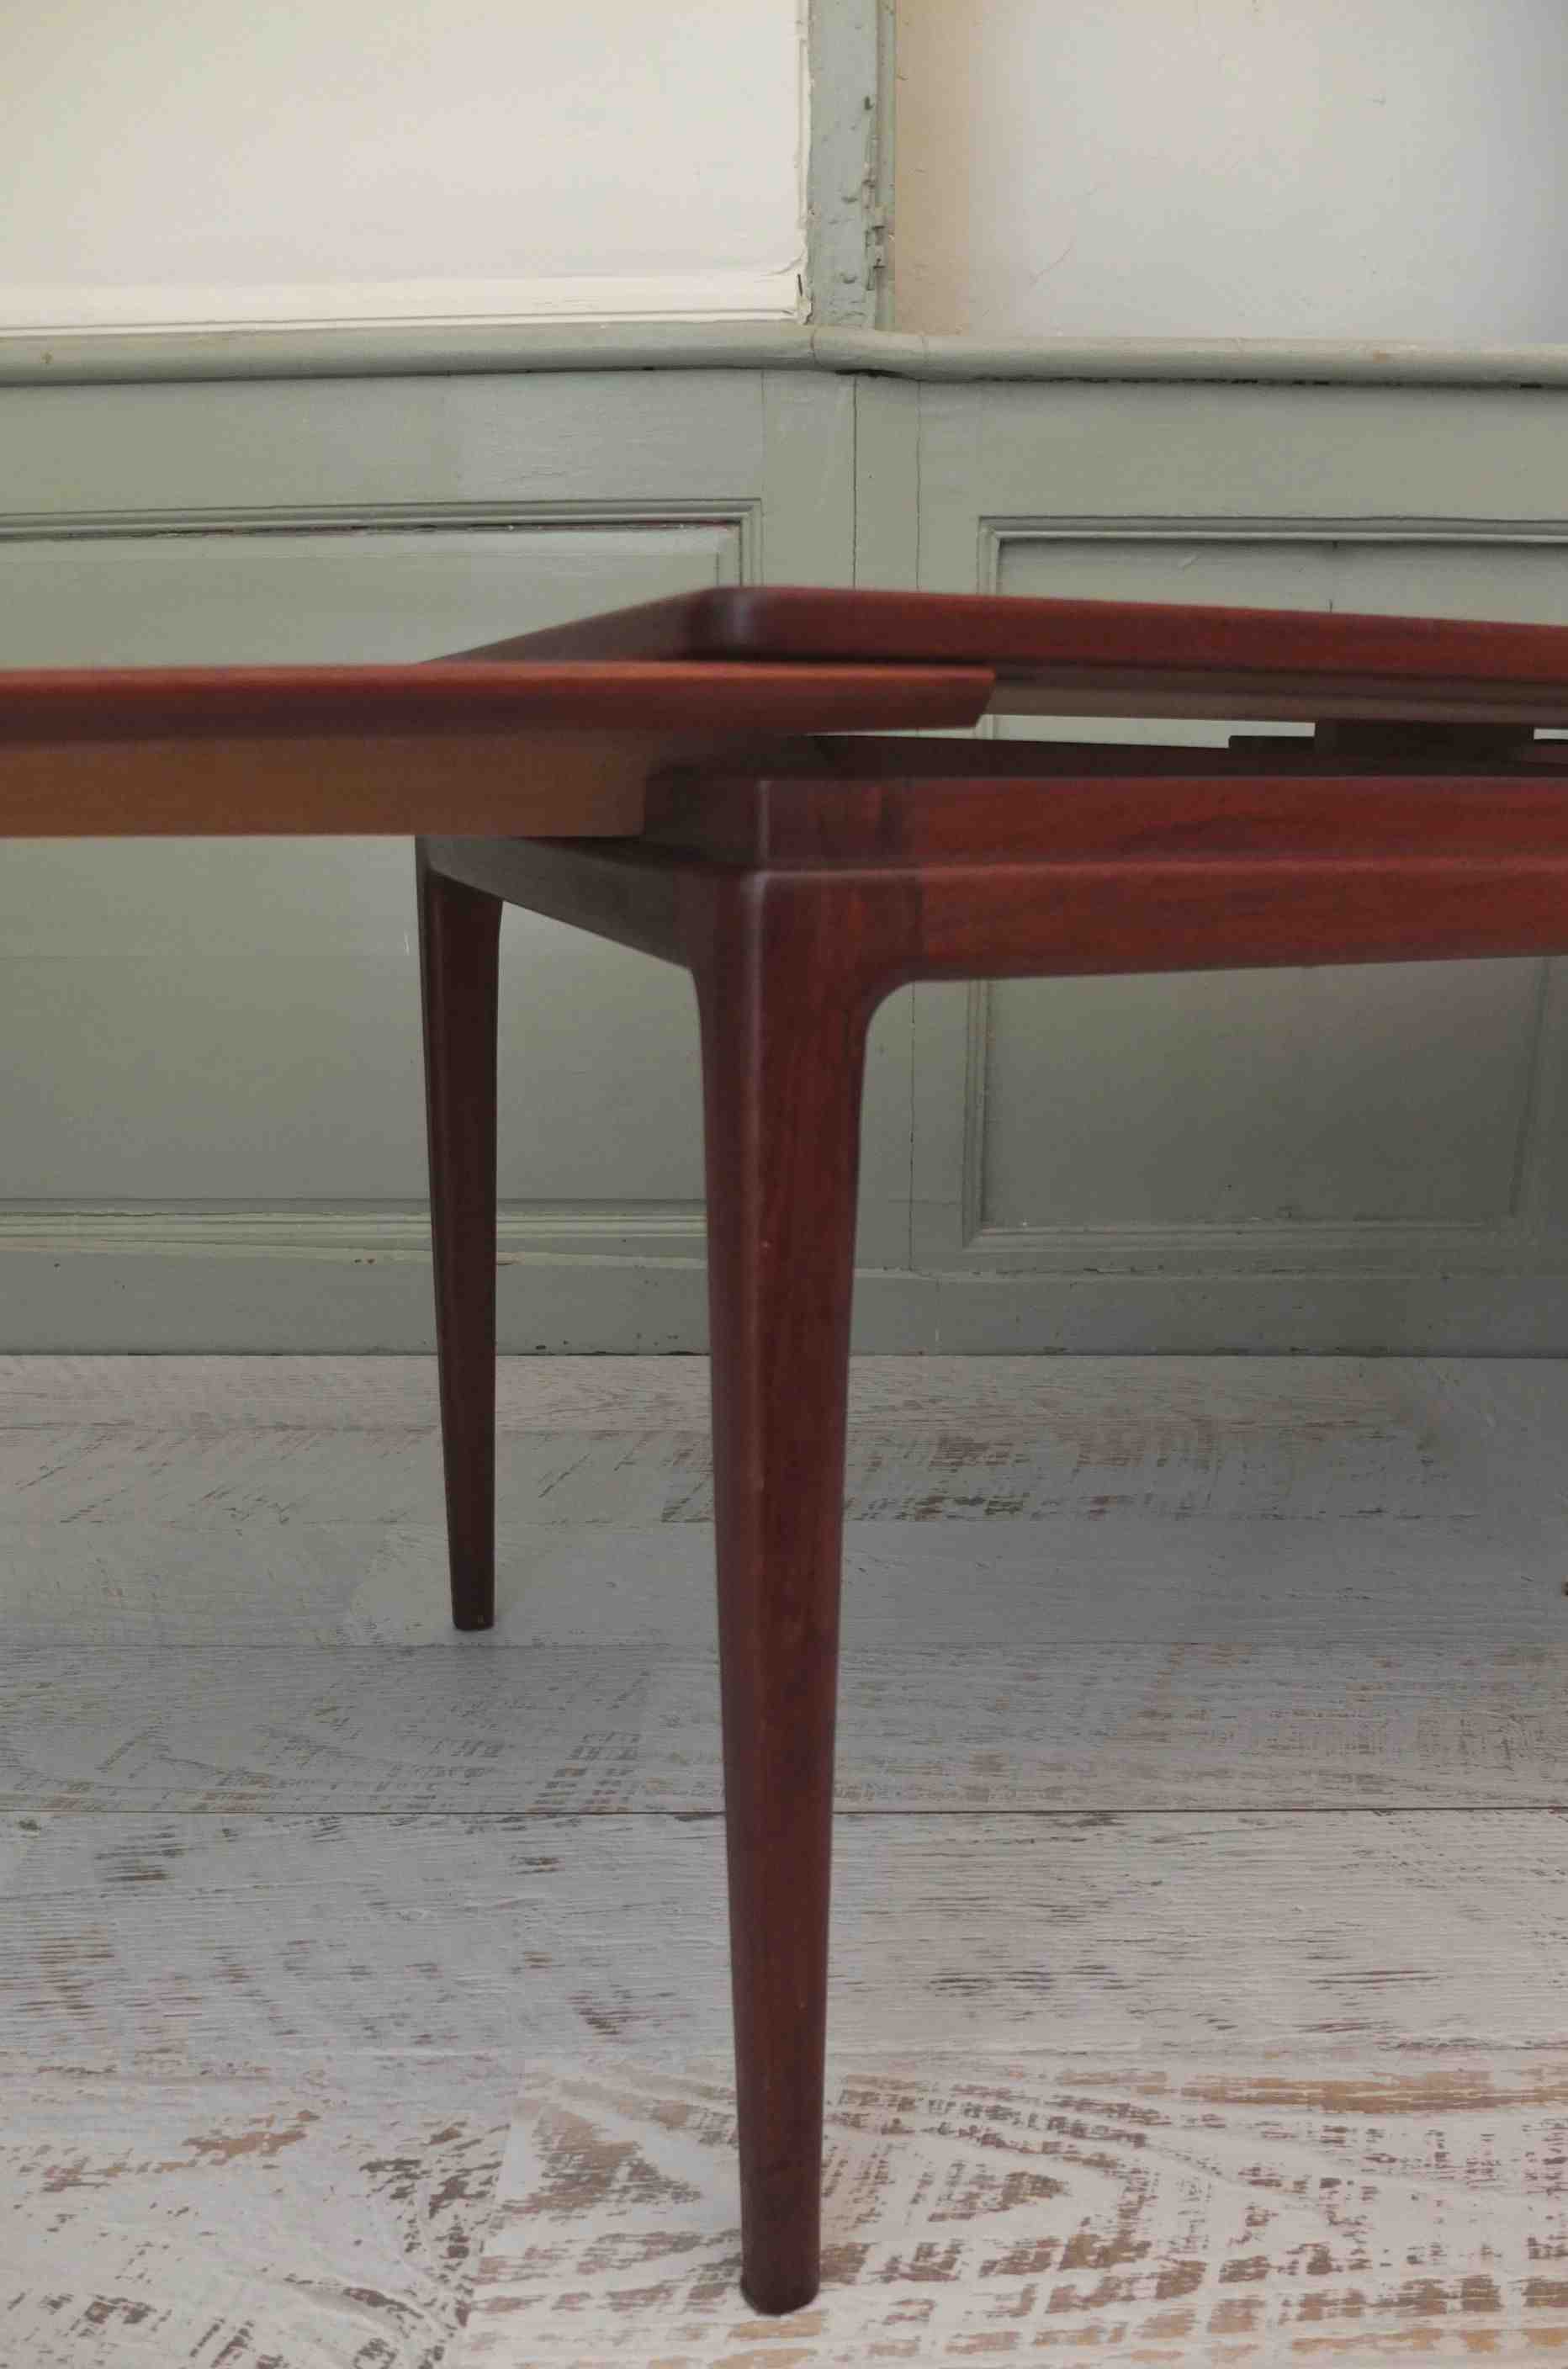 Slavia vintage table basse danoise des années 60 modèle vintage "Dansk" photo déplacement de la rallonge 